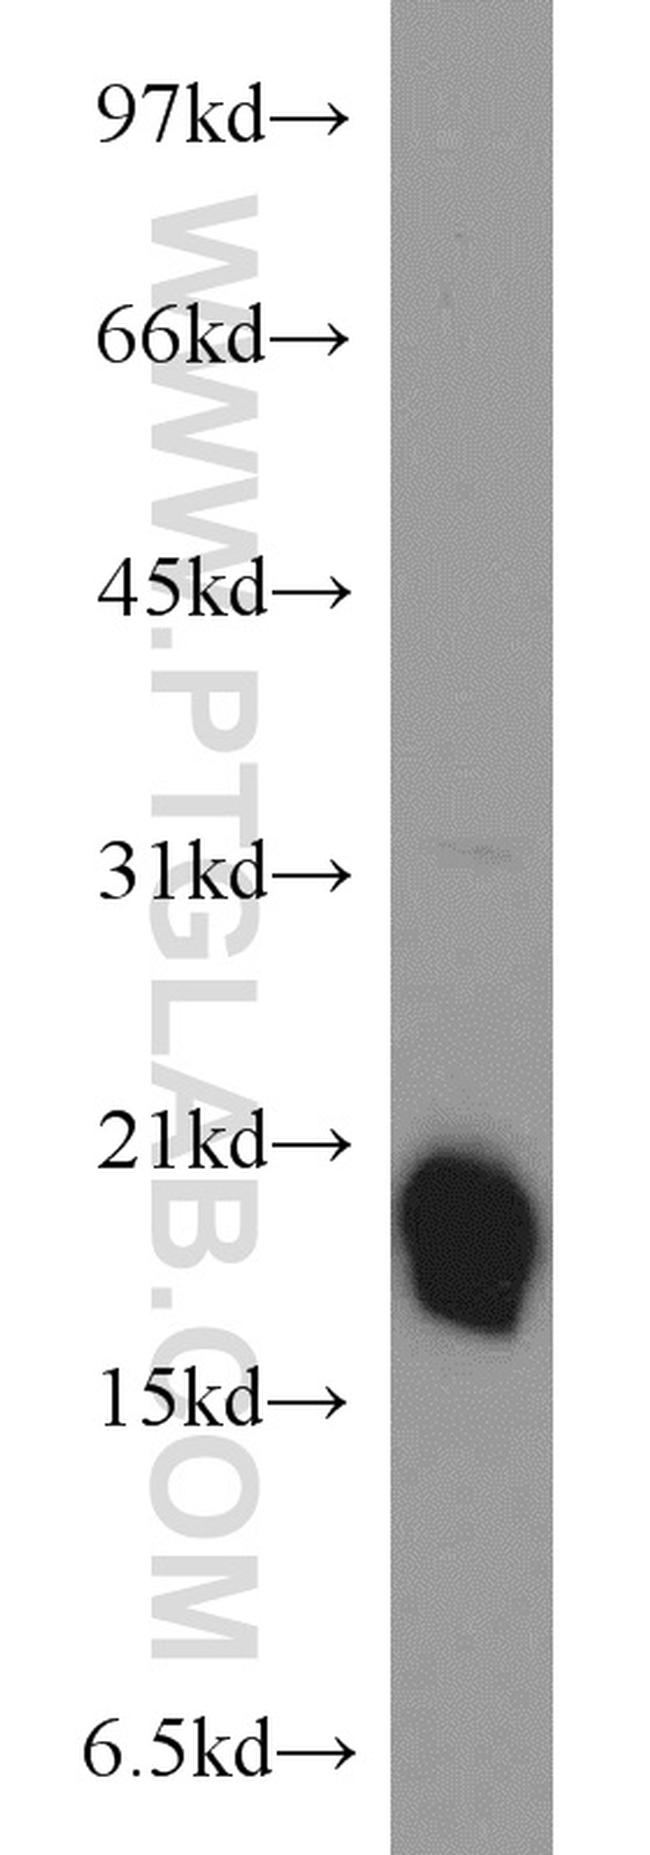 BUD31 Antibody in Western Blot (WB)